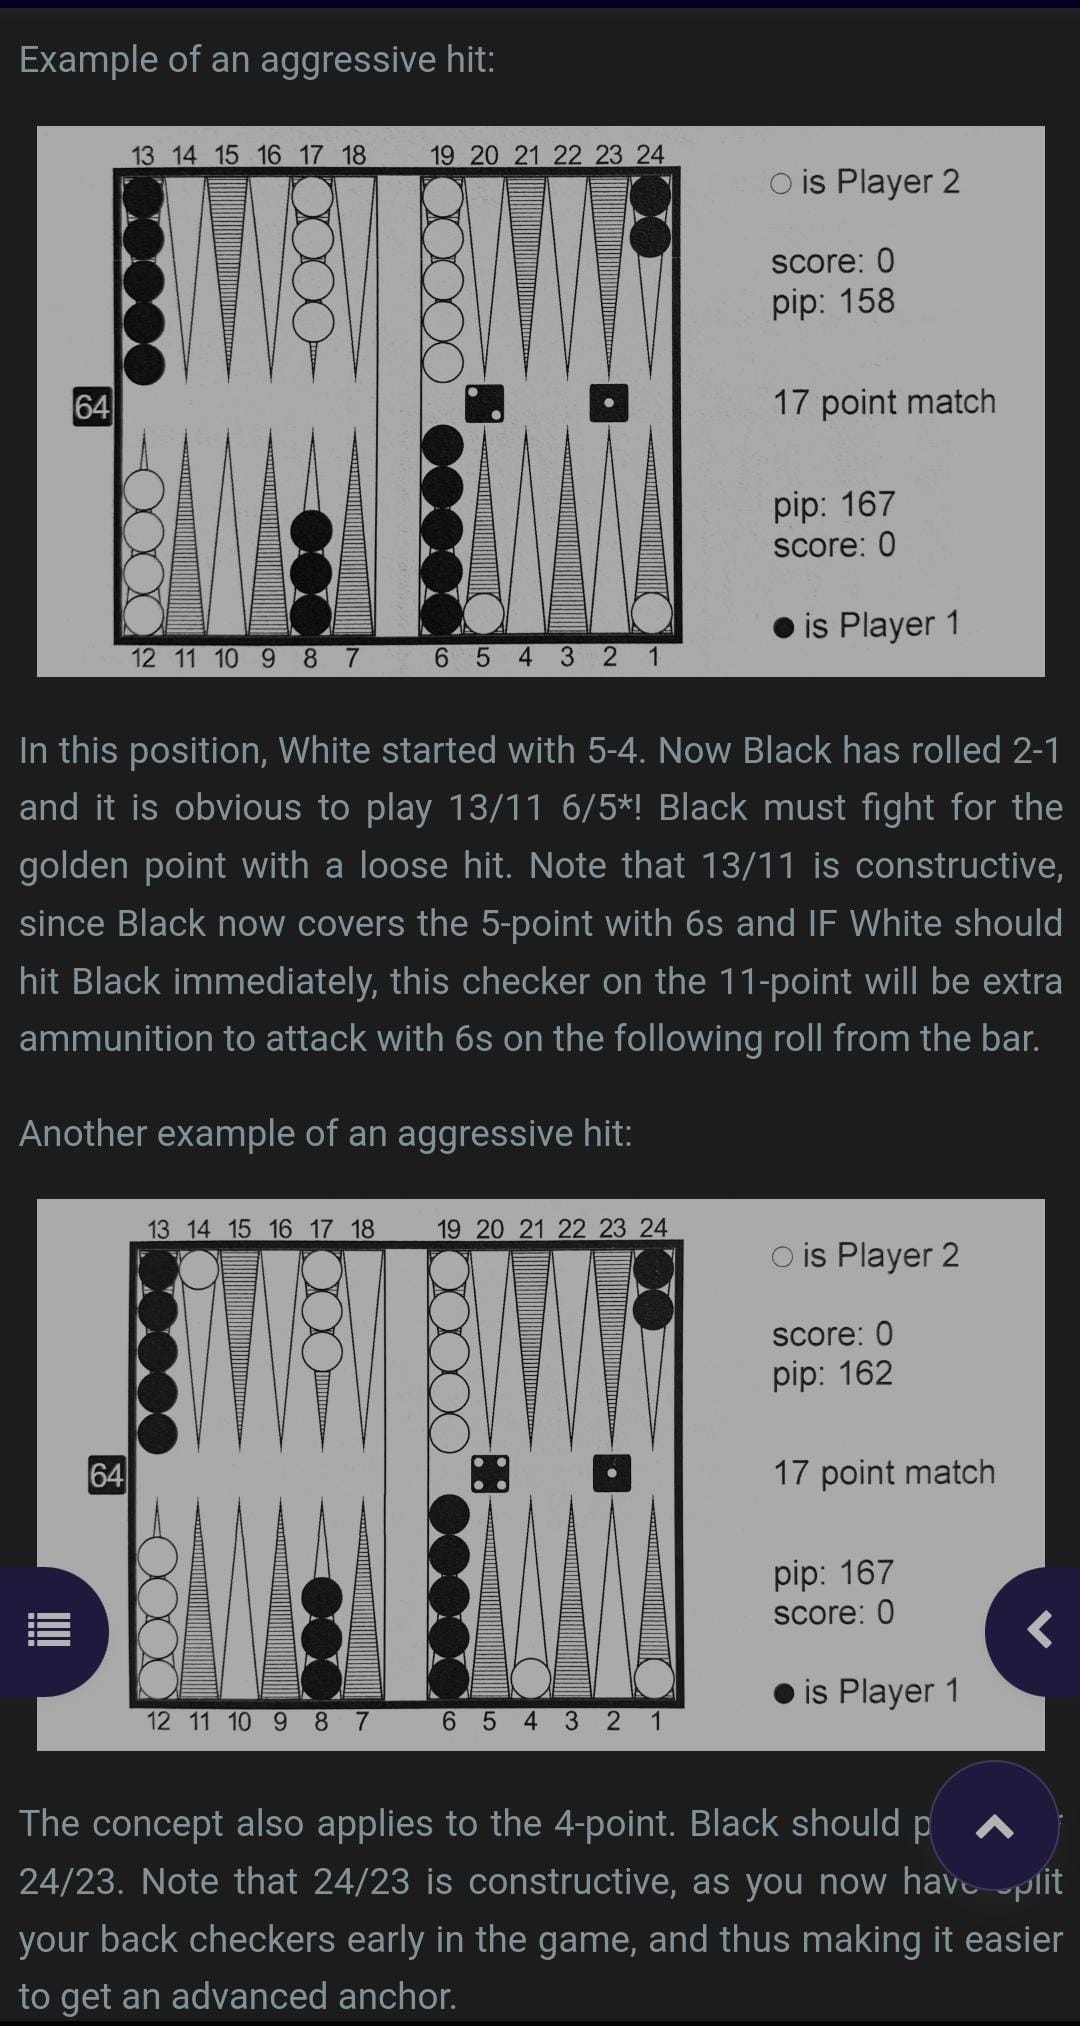 Backgammon: From Basics to Badass von Marc B. Olsen, Online-E-Book